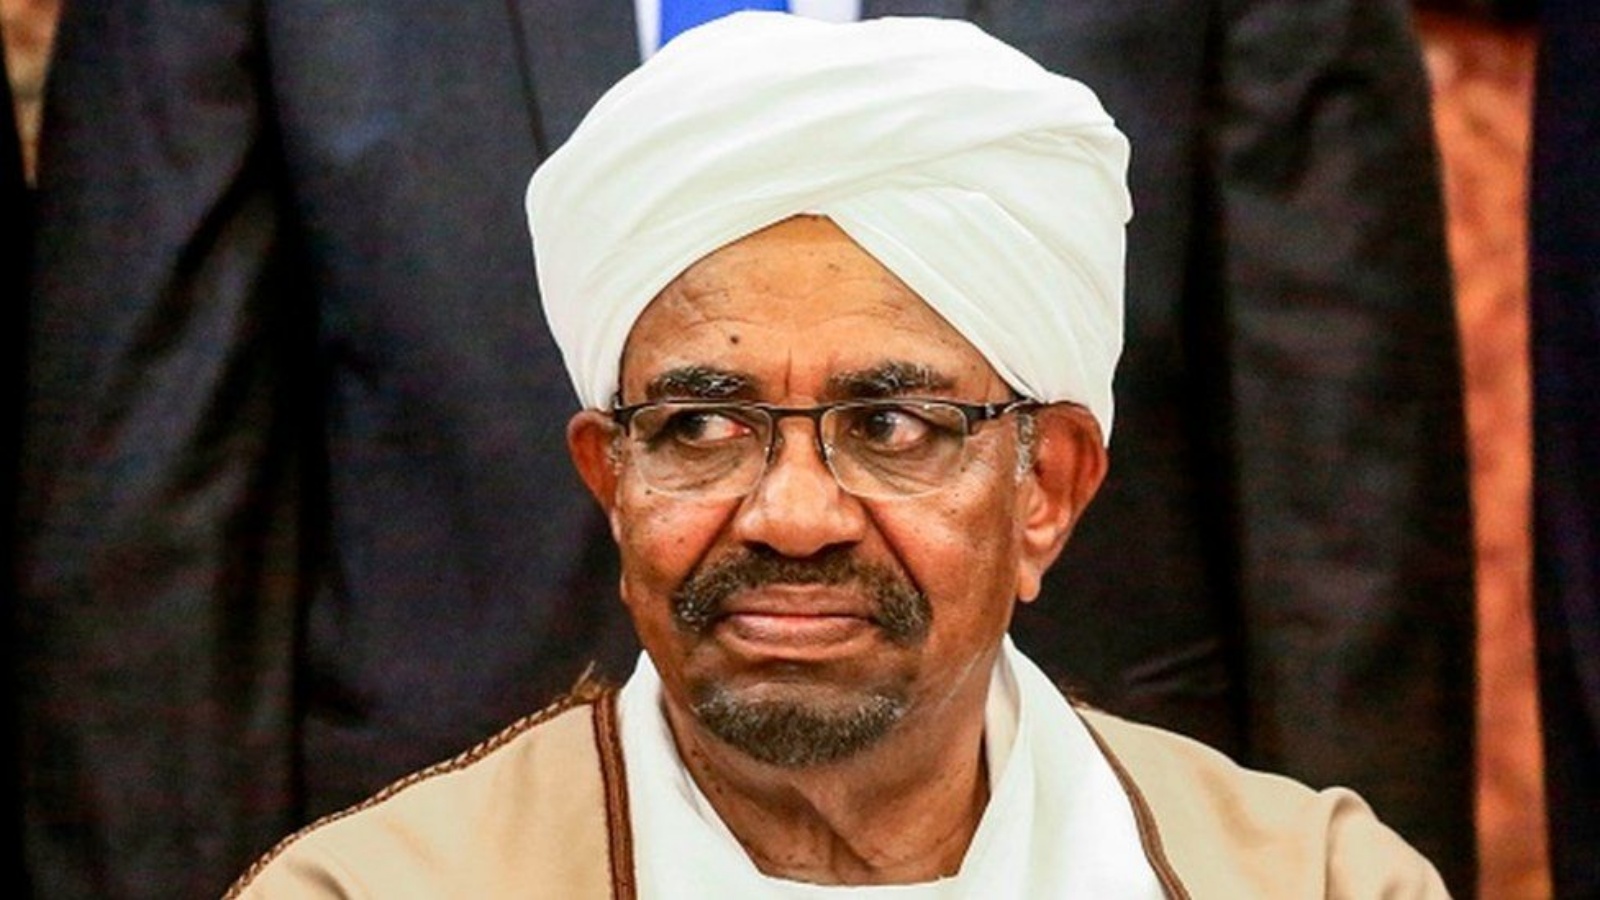 الرئيس السوداني السابق عمر البشير الذي حكم البلاد بقبضة من حديد طوال 30 عاماً. (أرشيفية)